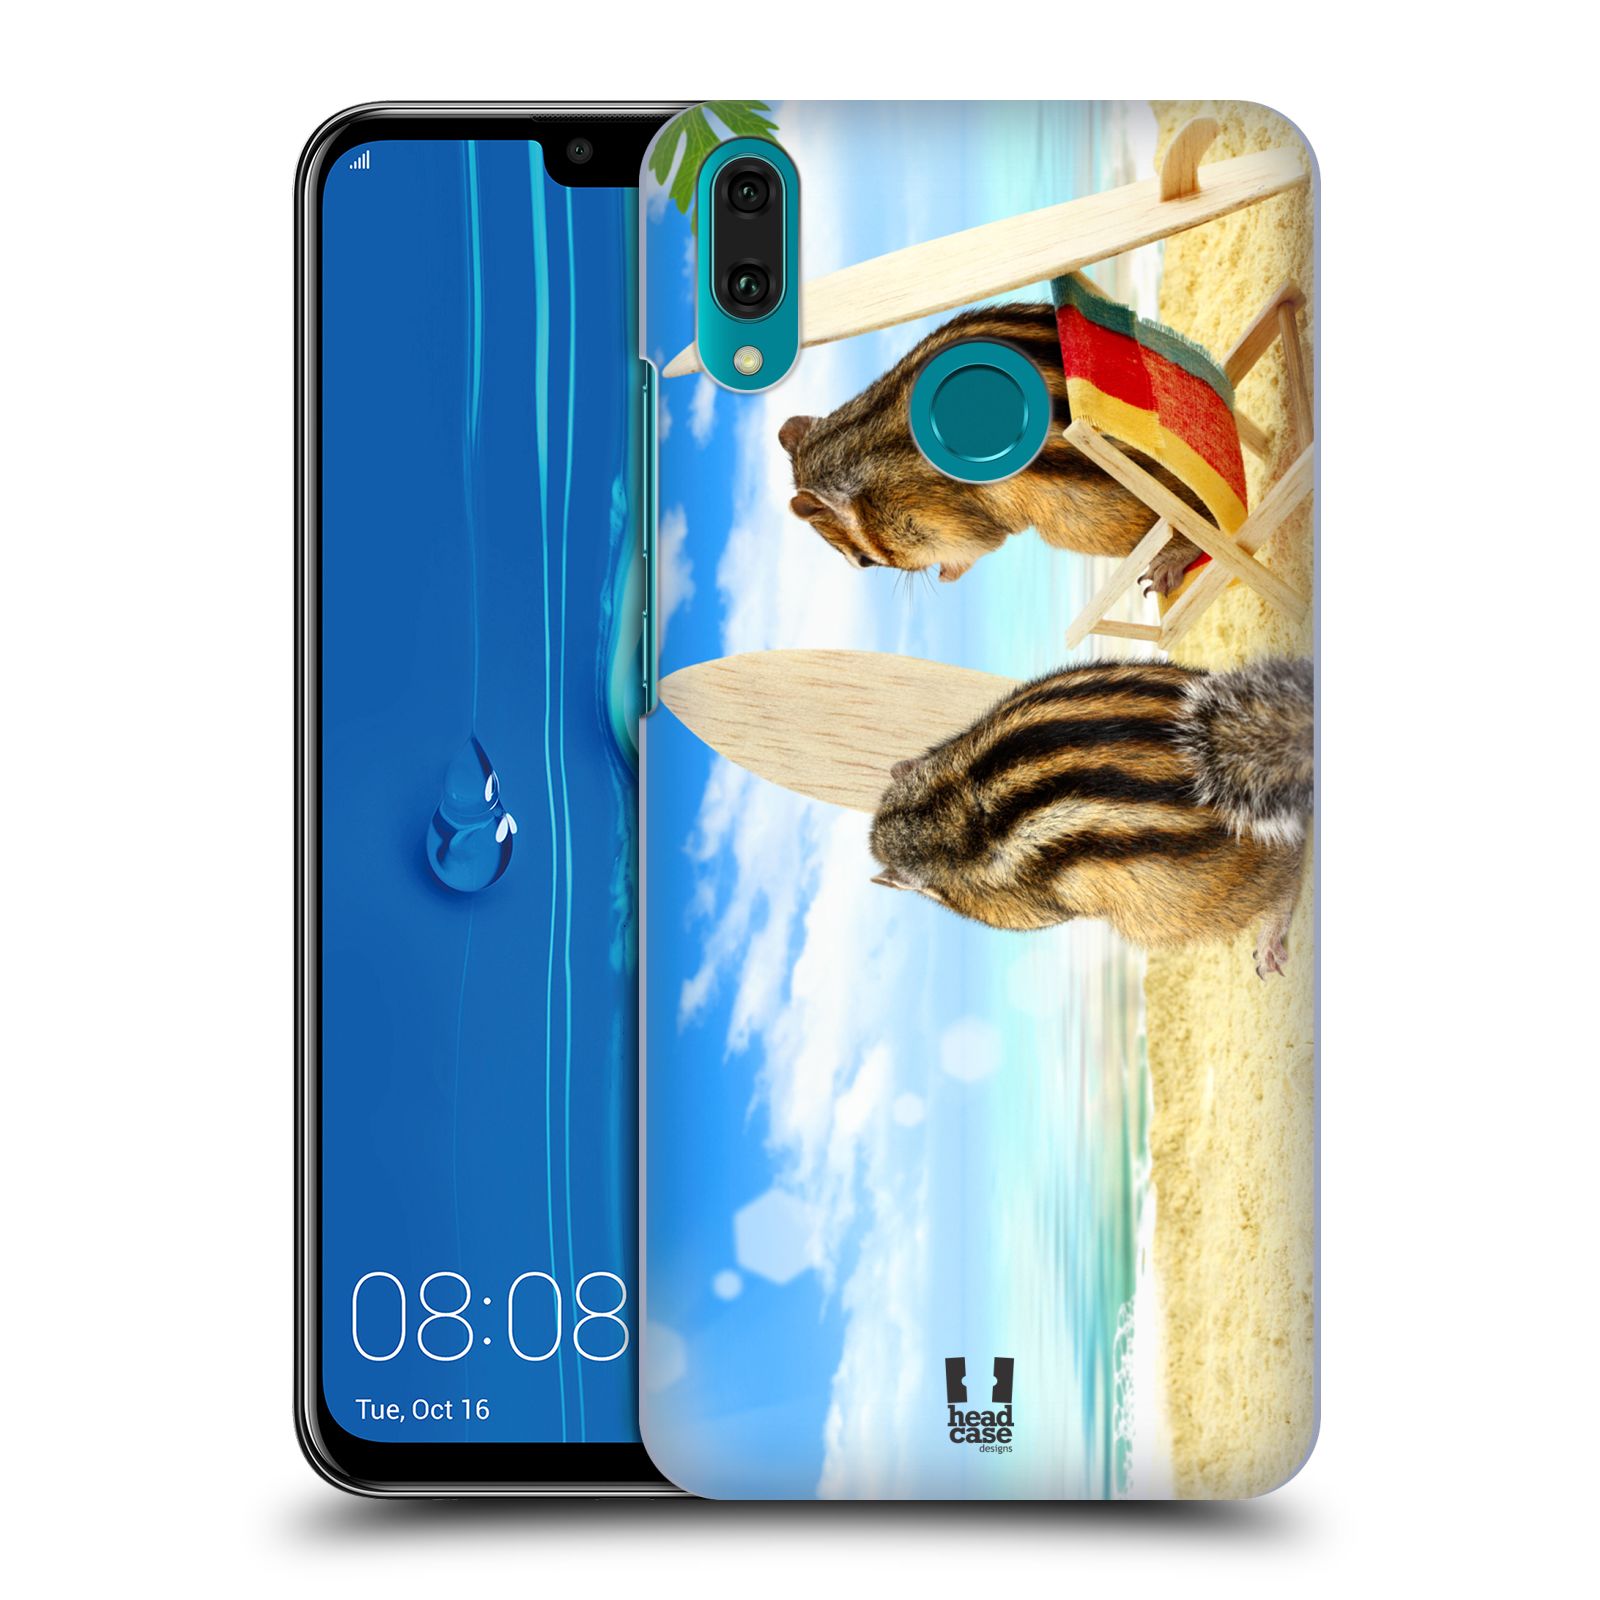 Pouzdro na mobil Huawei Y9 2019 - HEAD CASE - vzor Legrační zvířátka veverky surfaři u moře